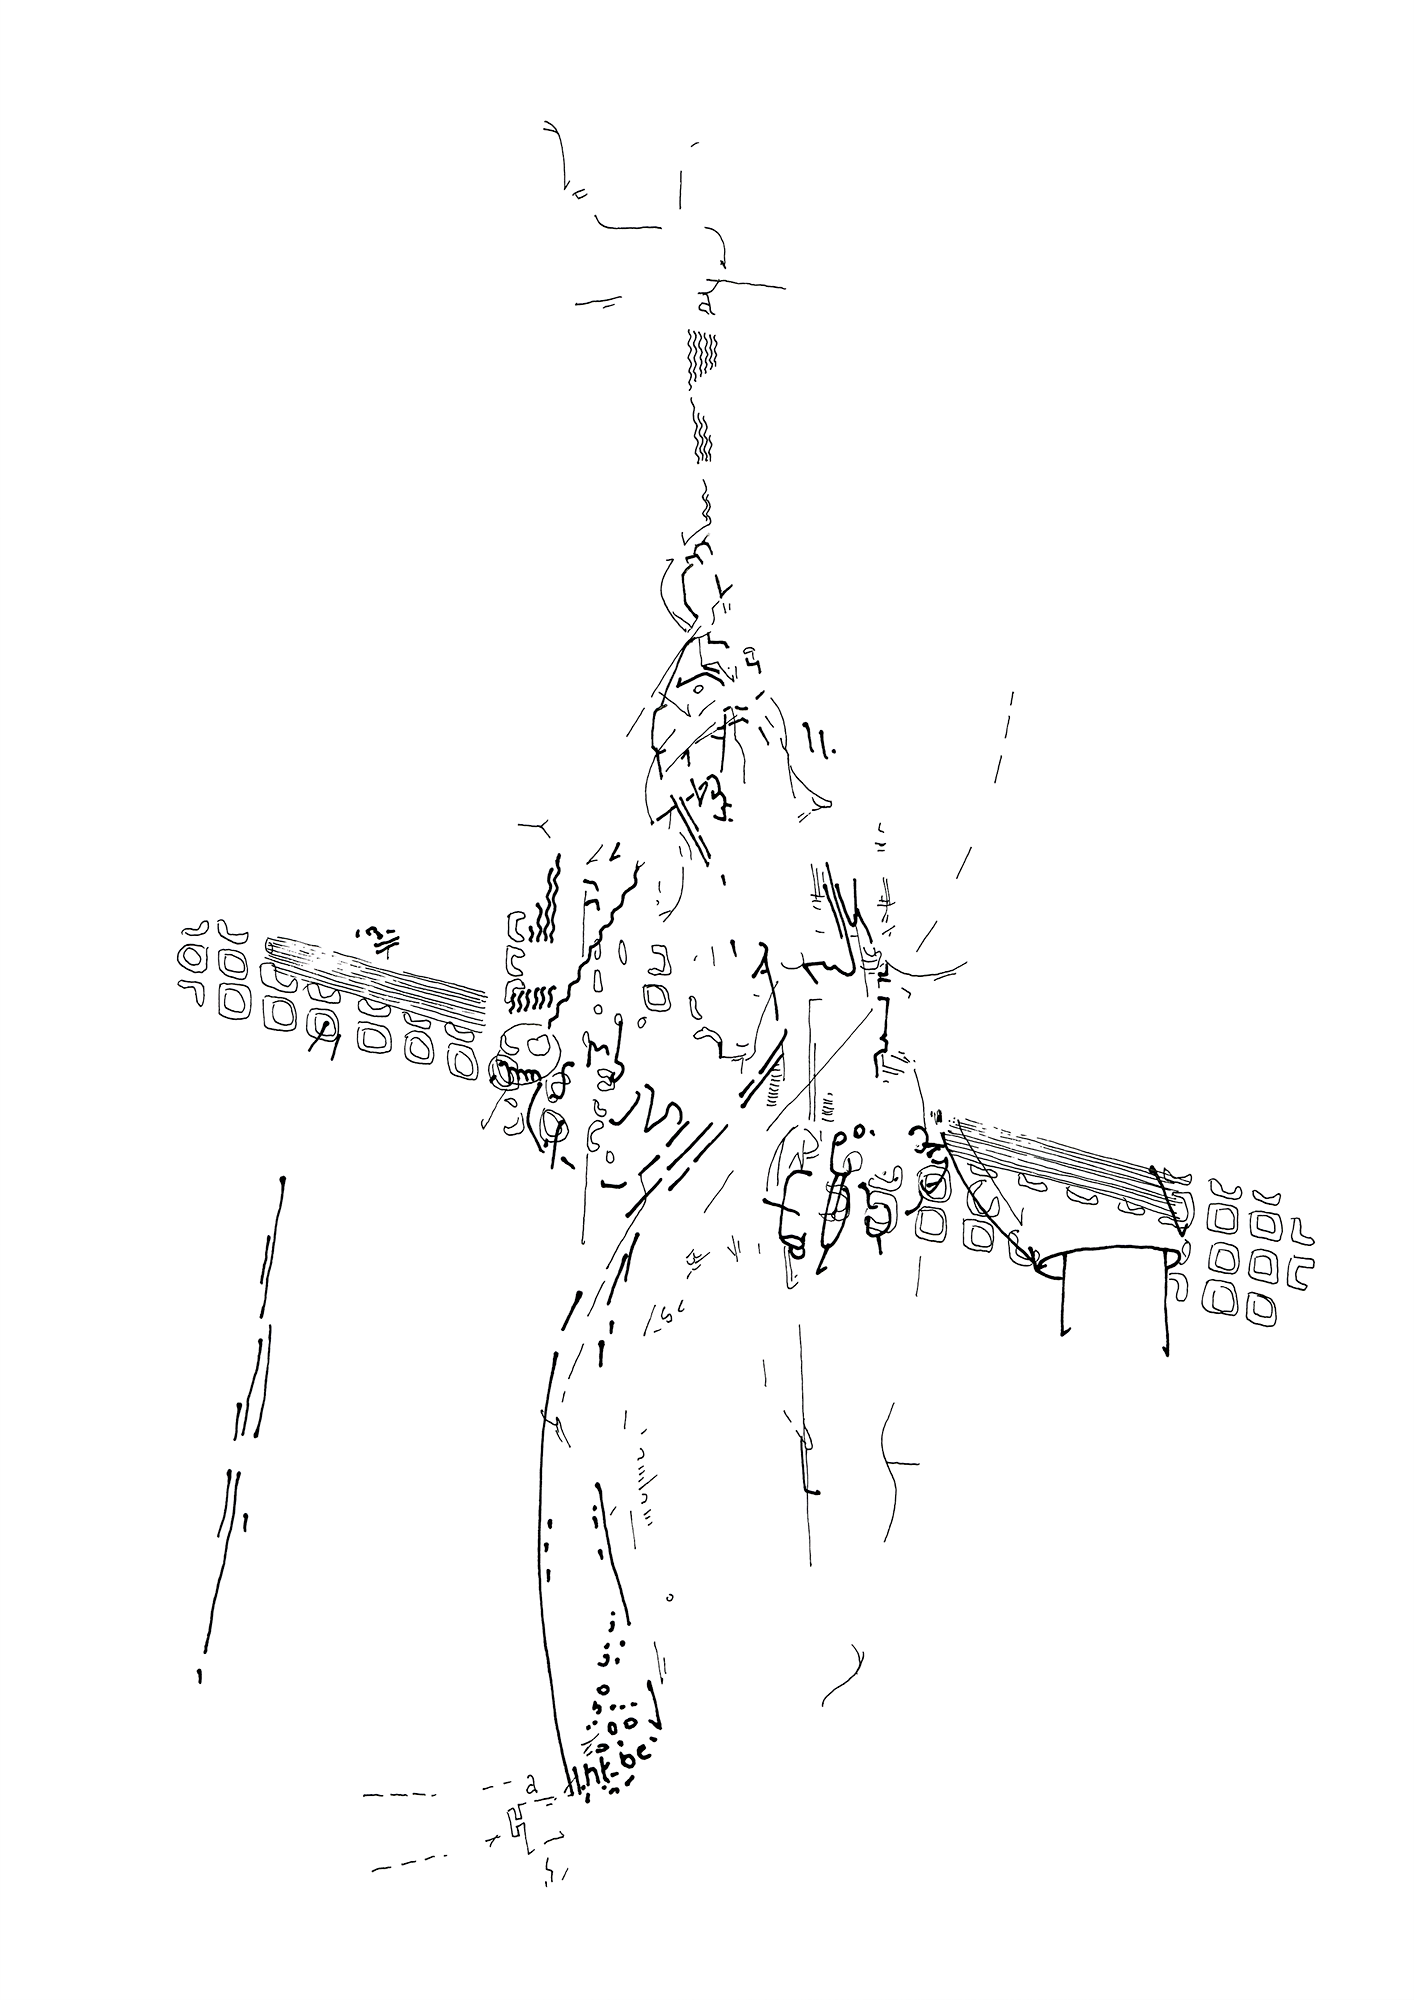 Hannes Kater: Tageszeichnung (Zeichnung/drawing) vom 04.11.2015 (1414 x 2000 Pixel)